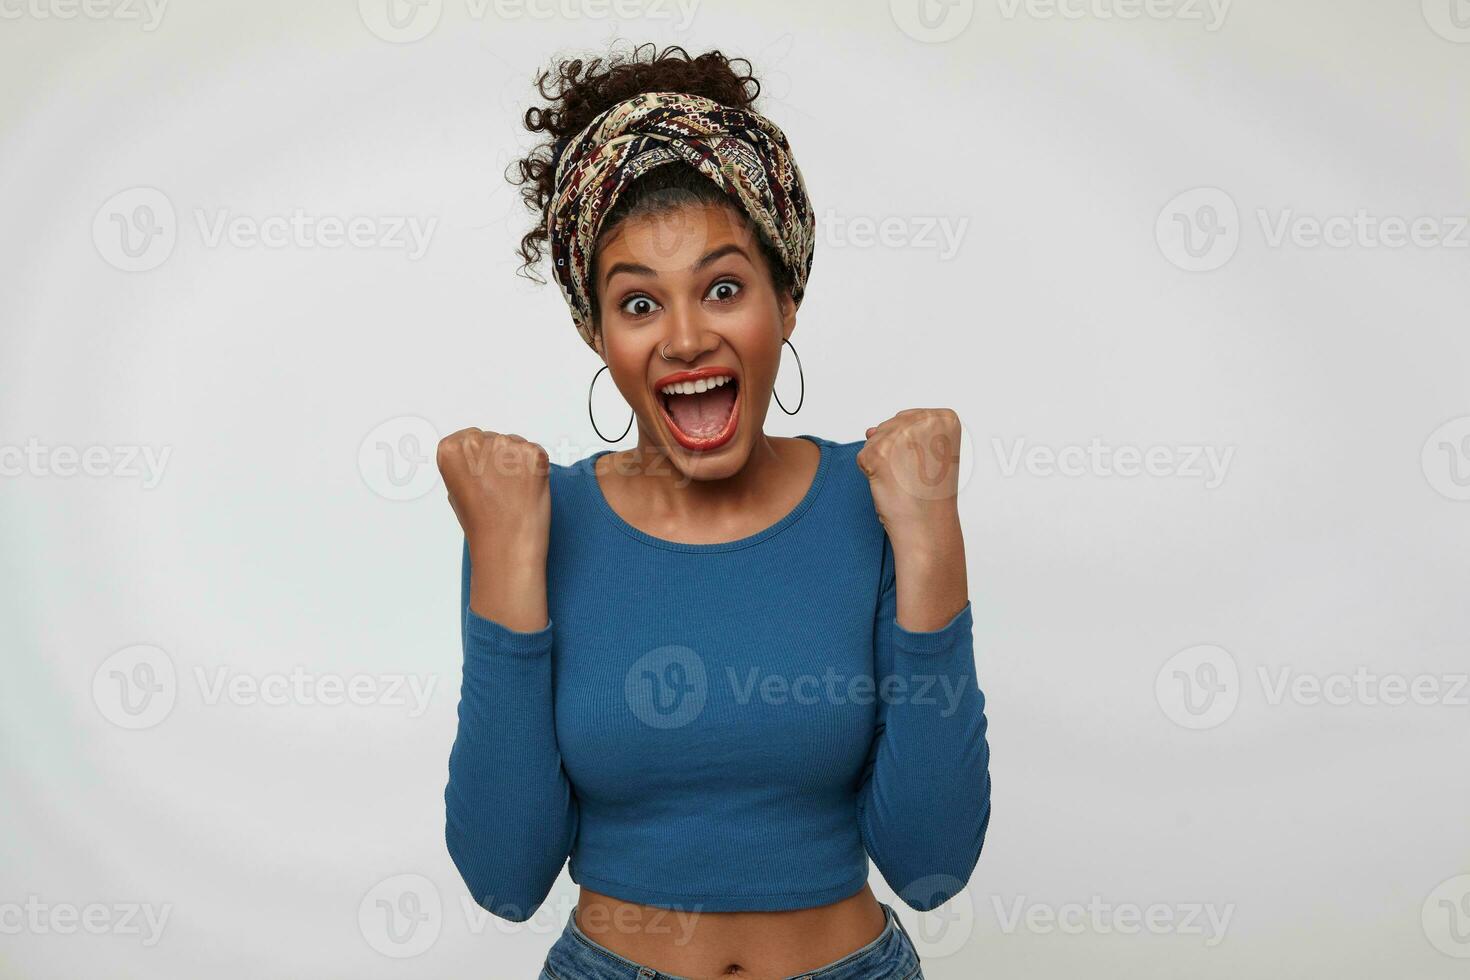 inomhus- Foto av ung upprörd mörk håriga lockigt kvinna med röd mun höjning lyckligt henne nävar medan fröjd handla om något, isolerat över vit bakgrund